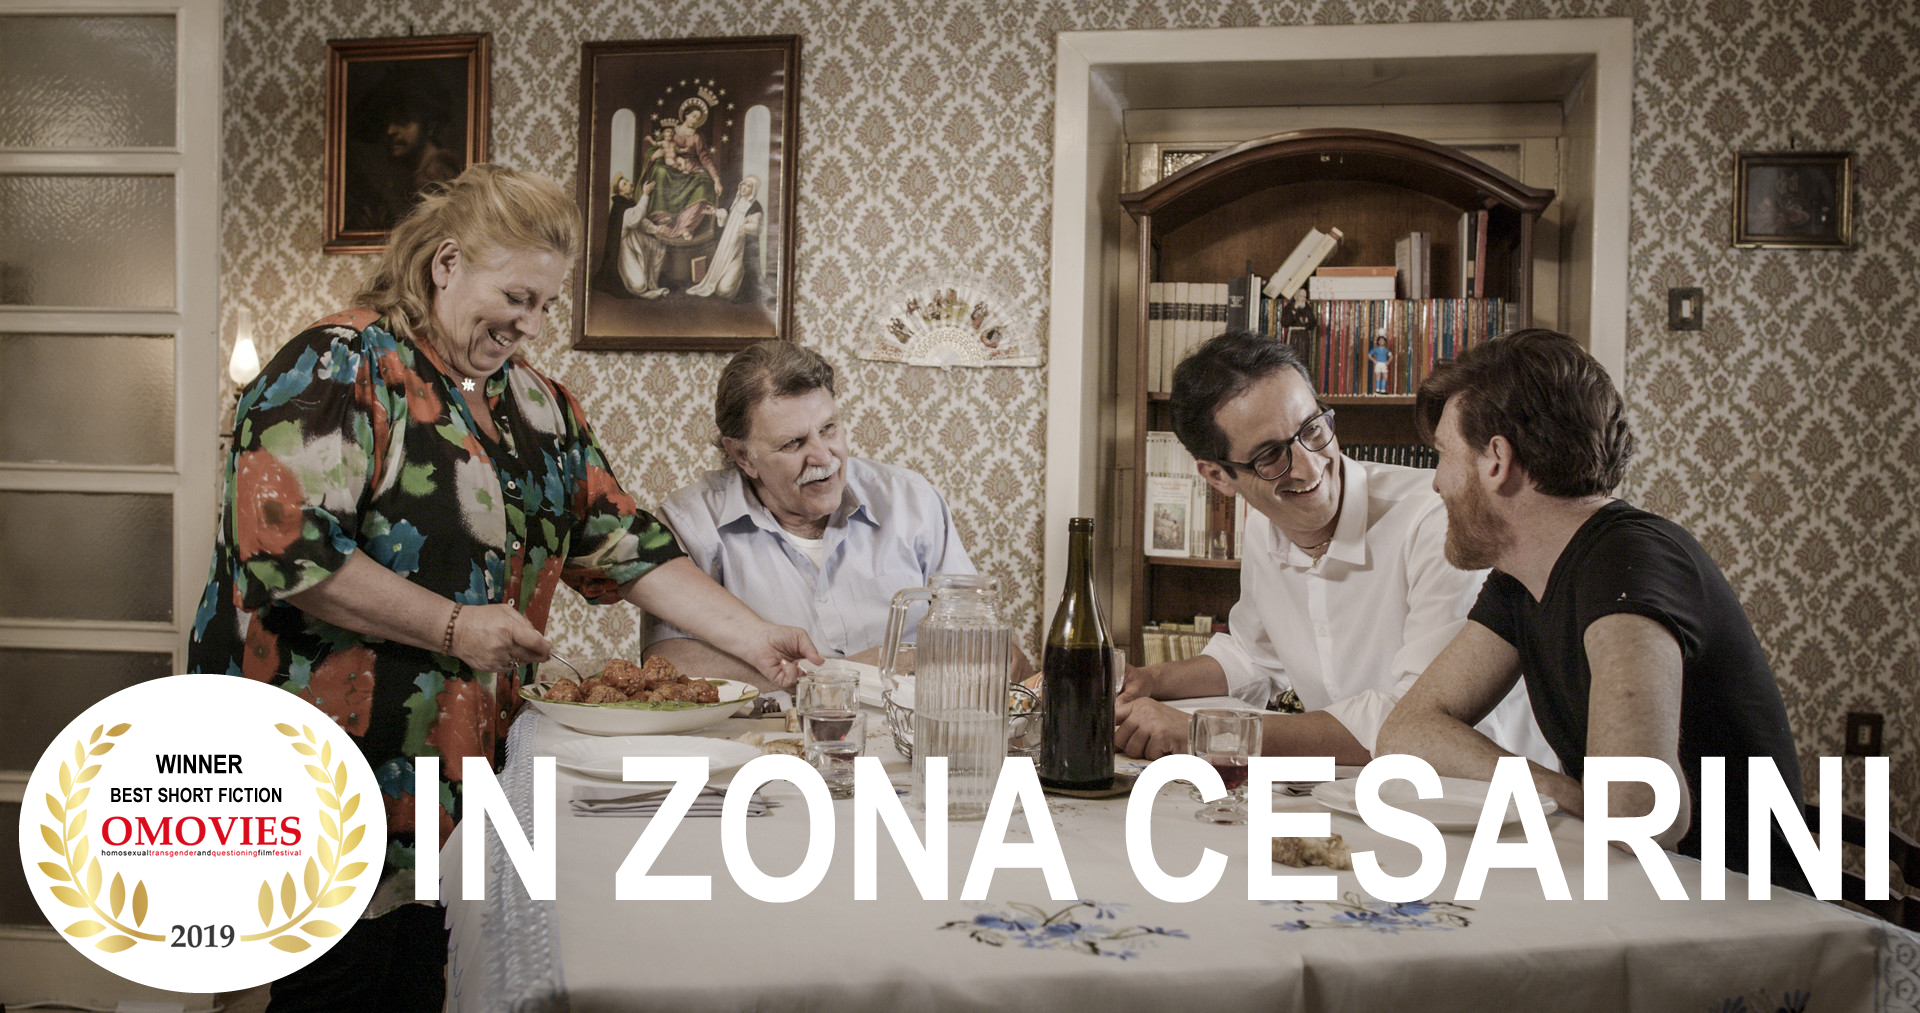 #Cinema | Con la collaborazione con Omovies film festival verrà trasmesso il mediometraggio vincitore del premio 2019 in zona Cesarini regia di Simona Cocozza